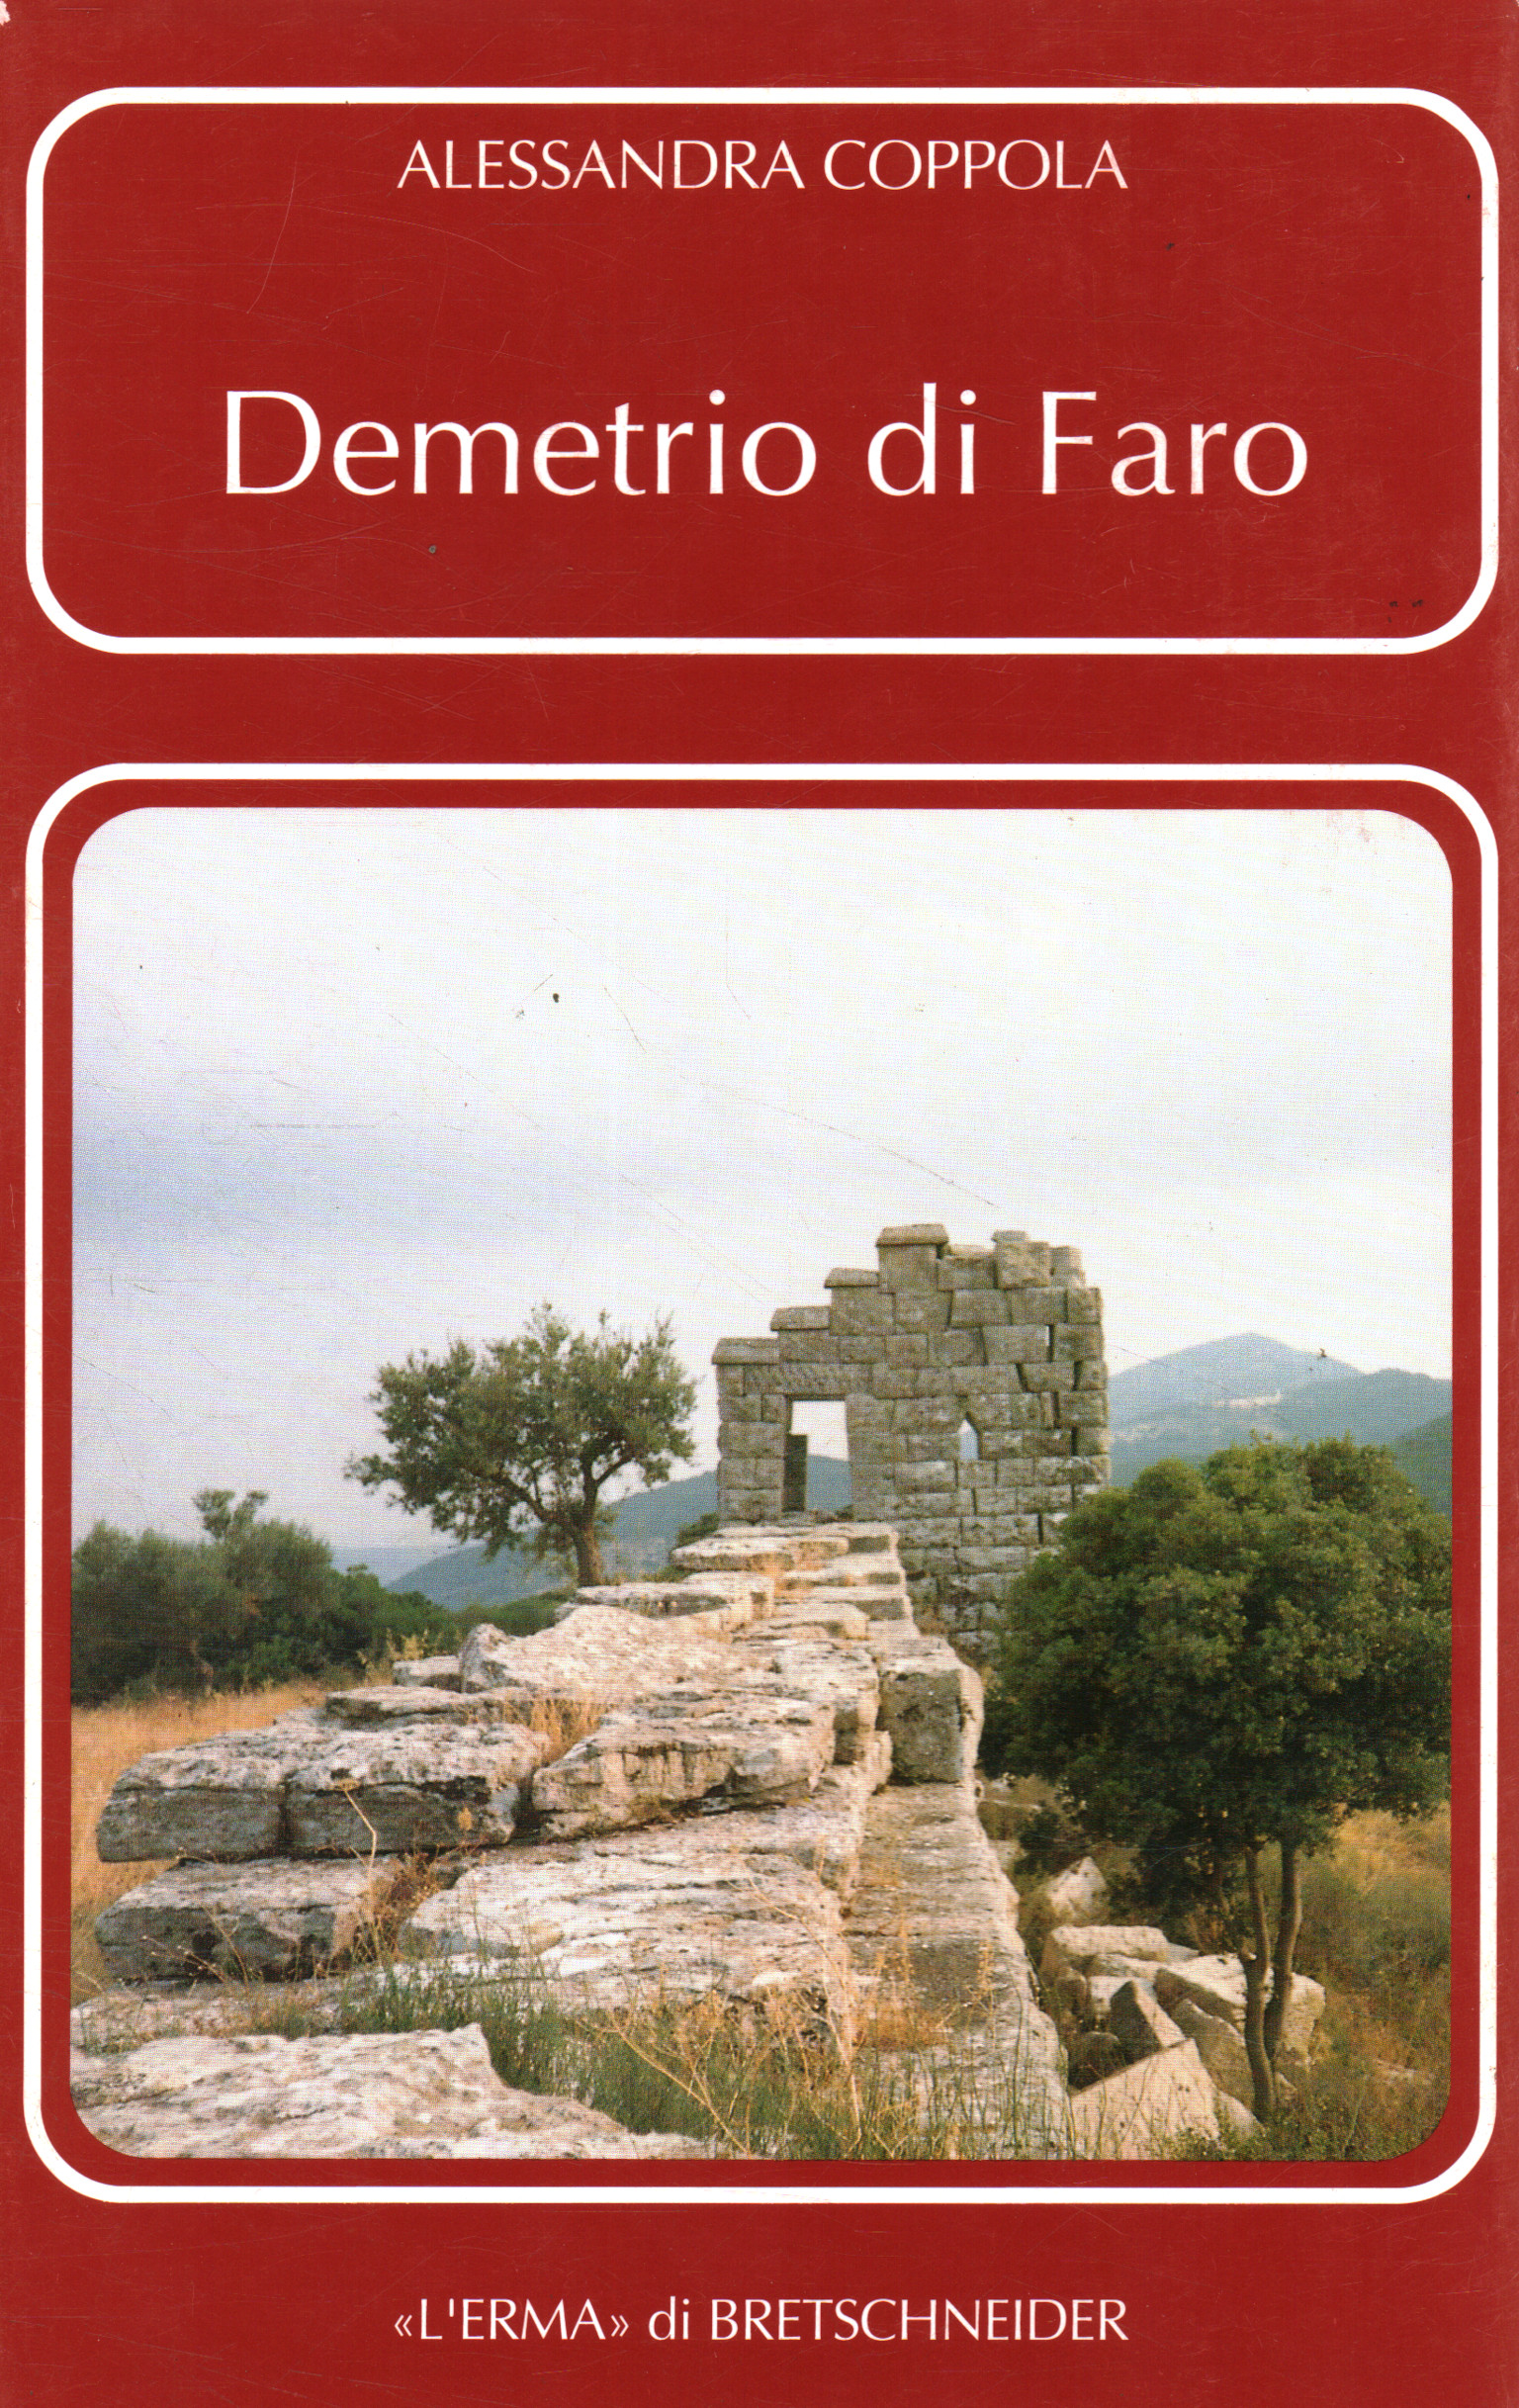 Demetrio de Faro